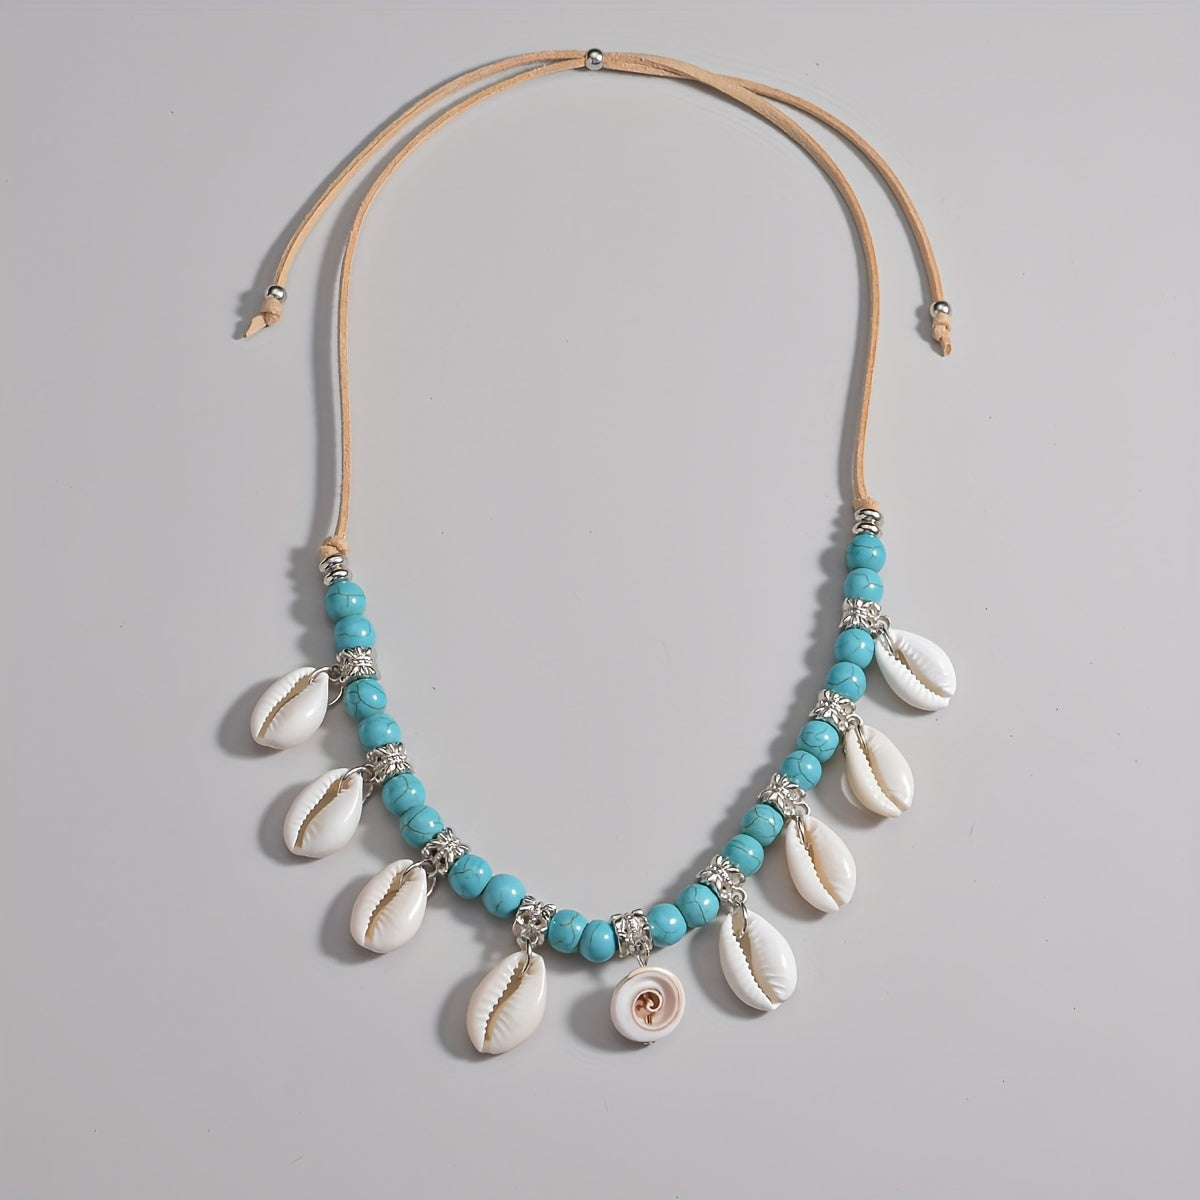 Bohemian Natural Shell Tassel Turquoise Beads Velvet Rope Women's Necklace